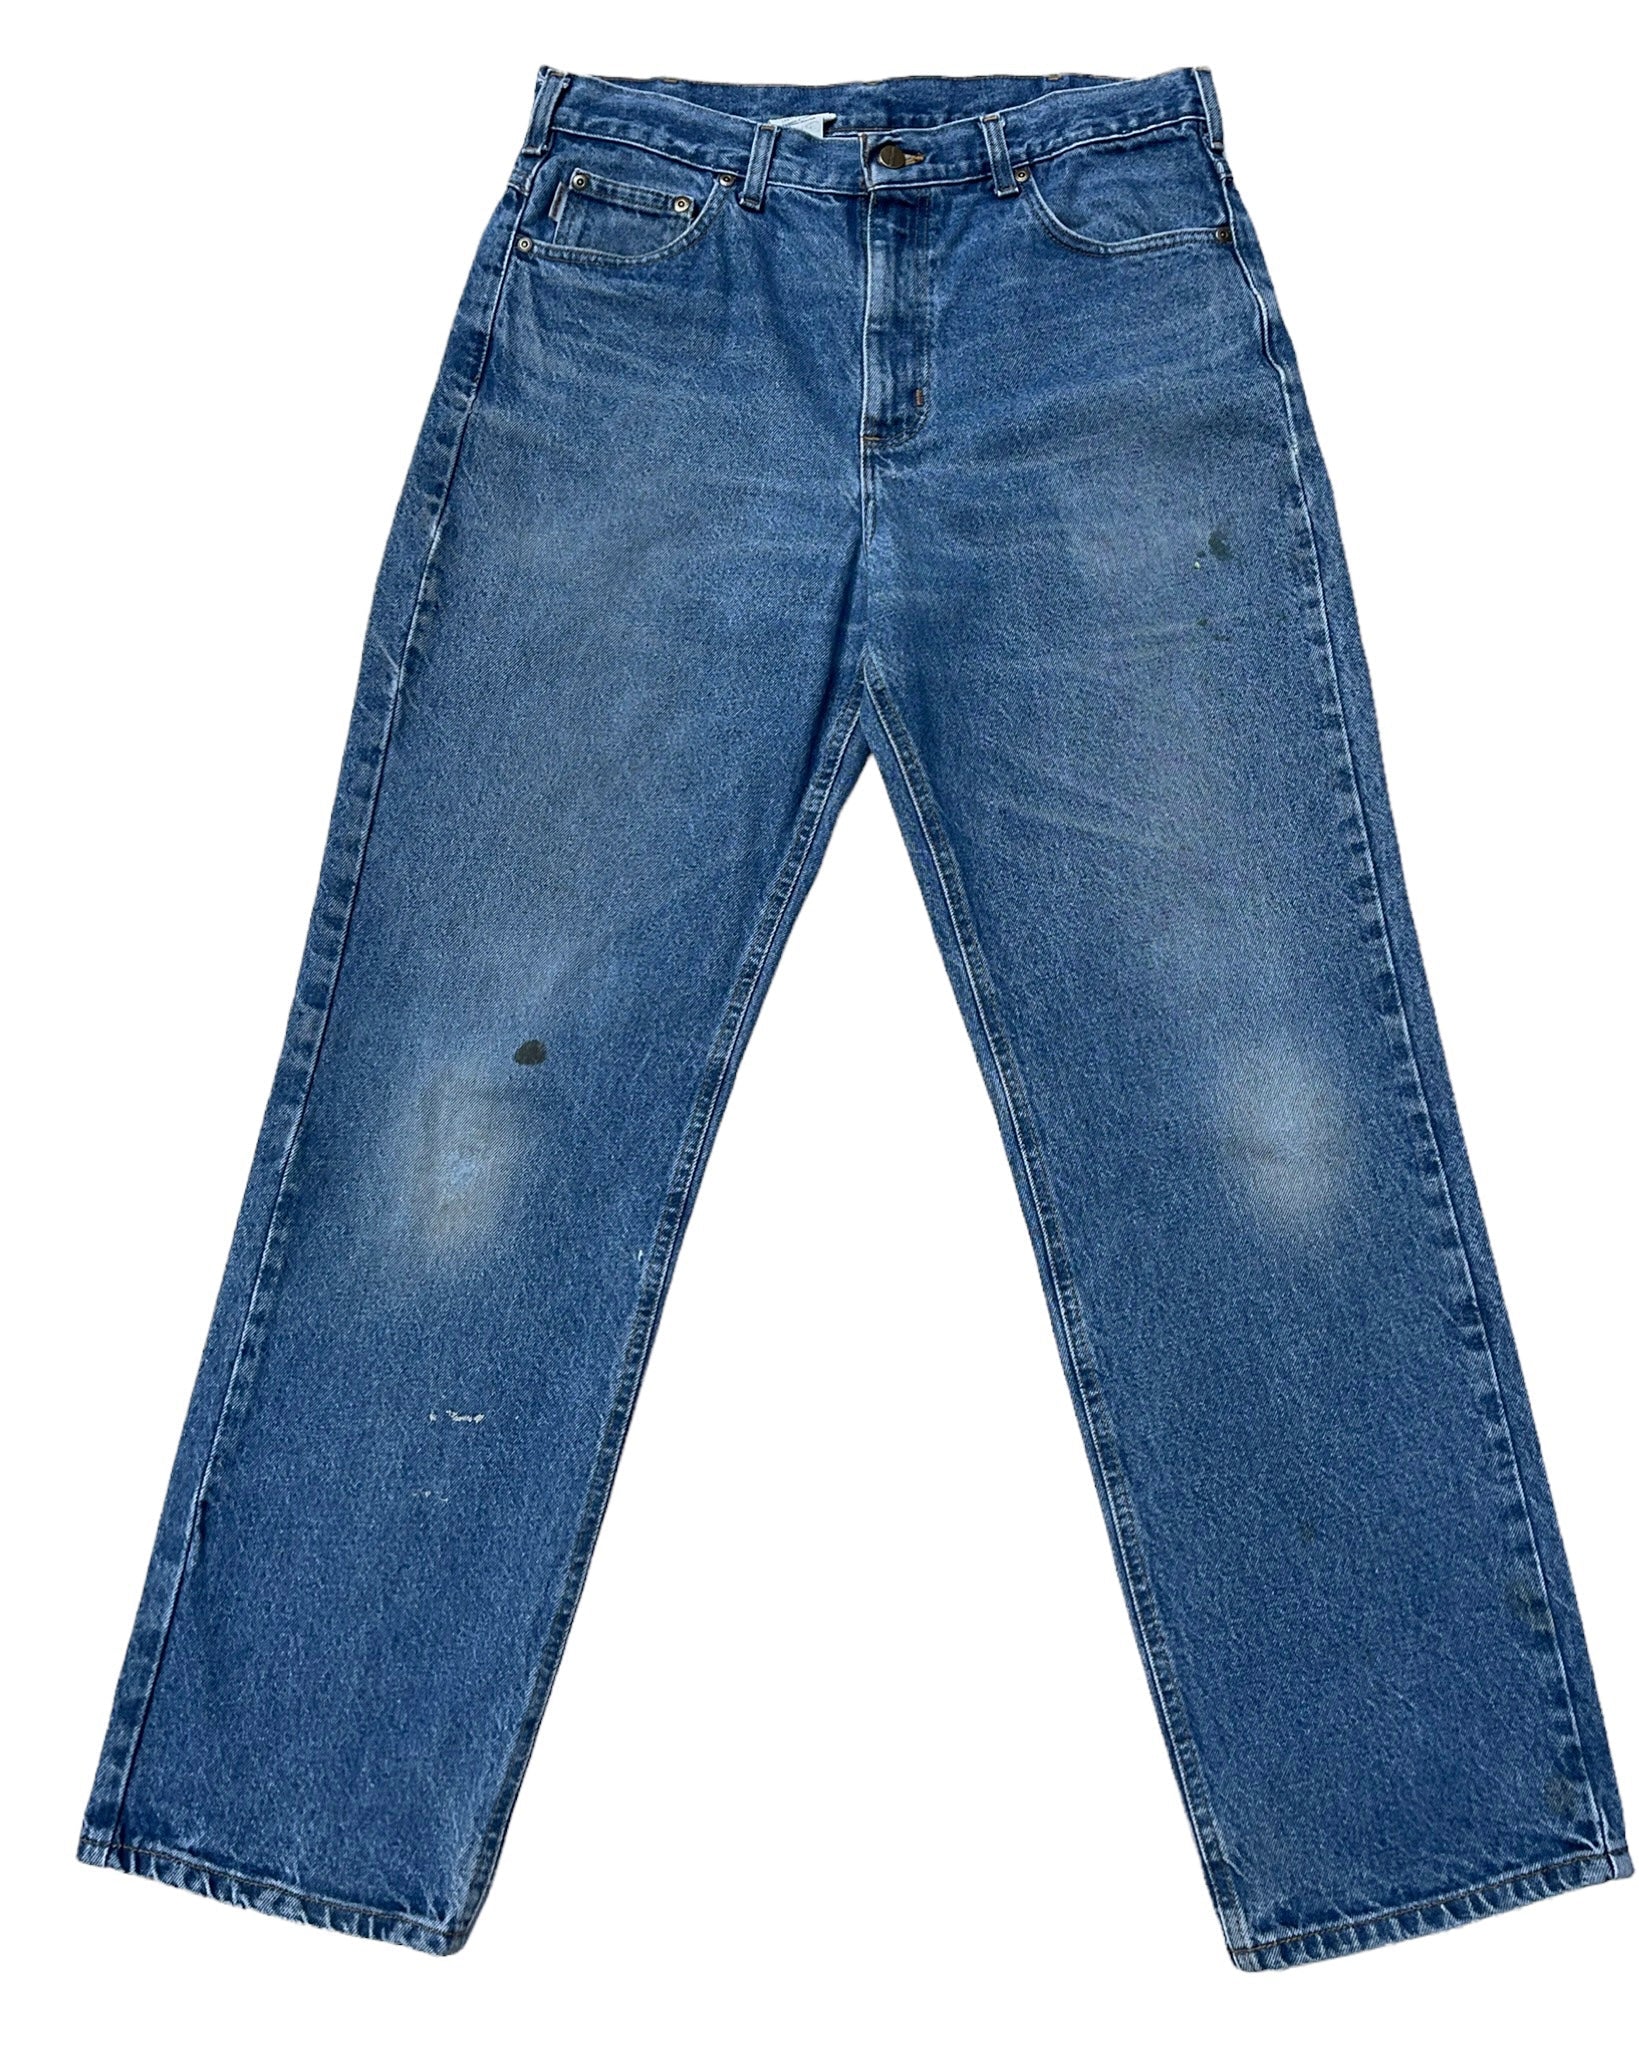  Jeans Carhartt Jean - B160DST - W36 L32 - PLOMOSTORE